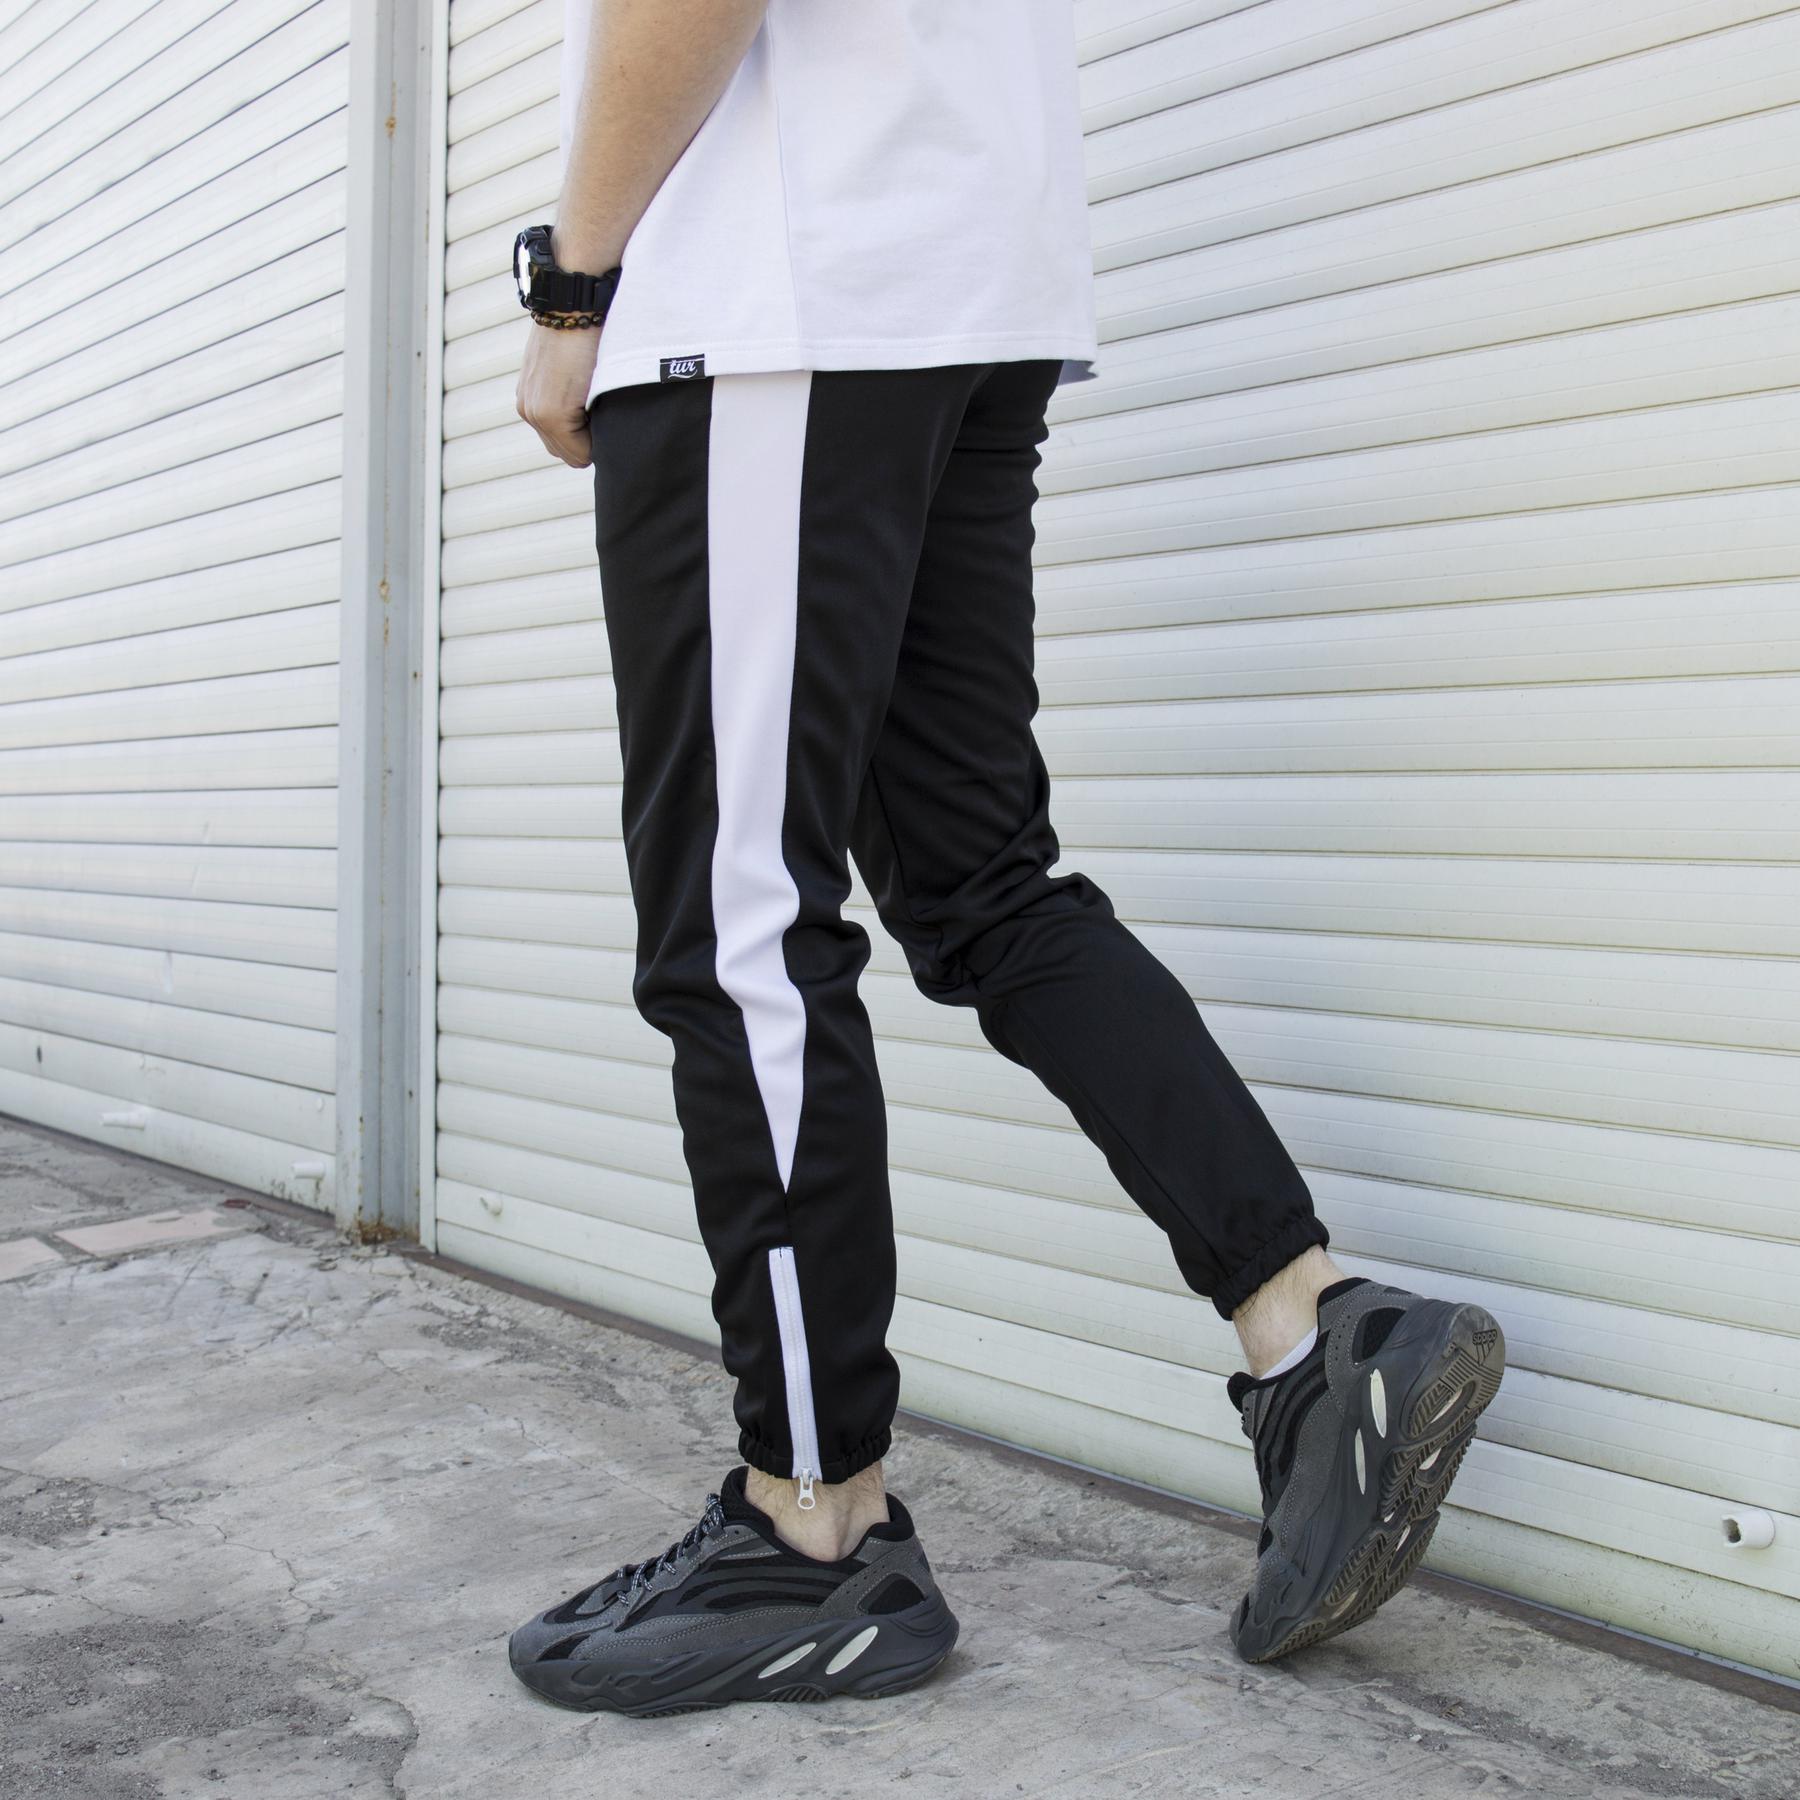 Спортивные штаны черные с белым лампасом мужские бренд ТУР модель Рокки (Rocky) TURWEAR - Фото 3